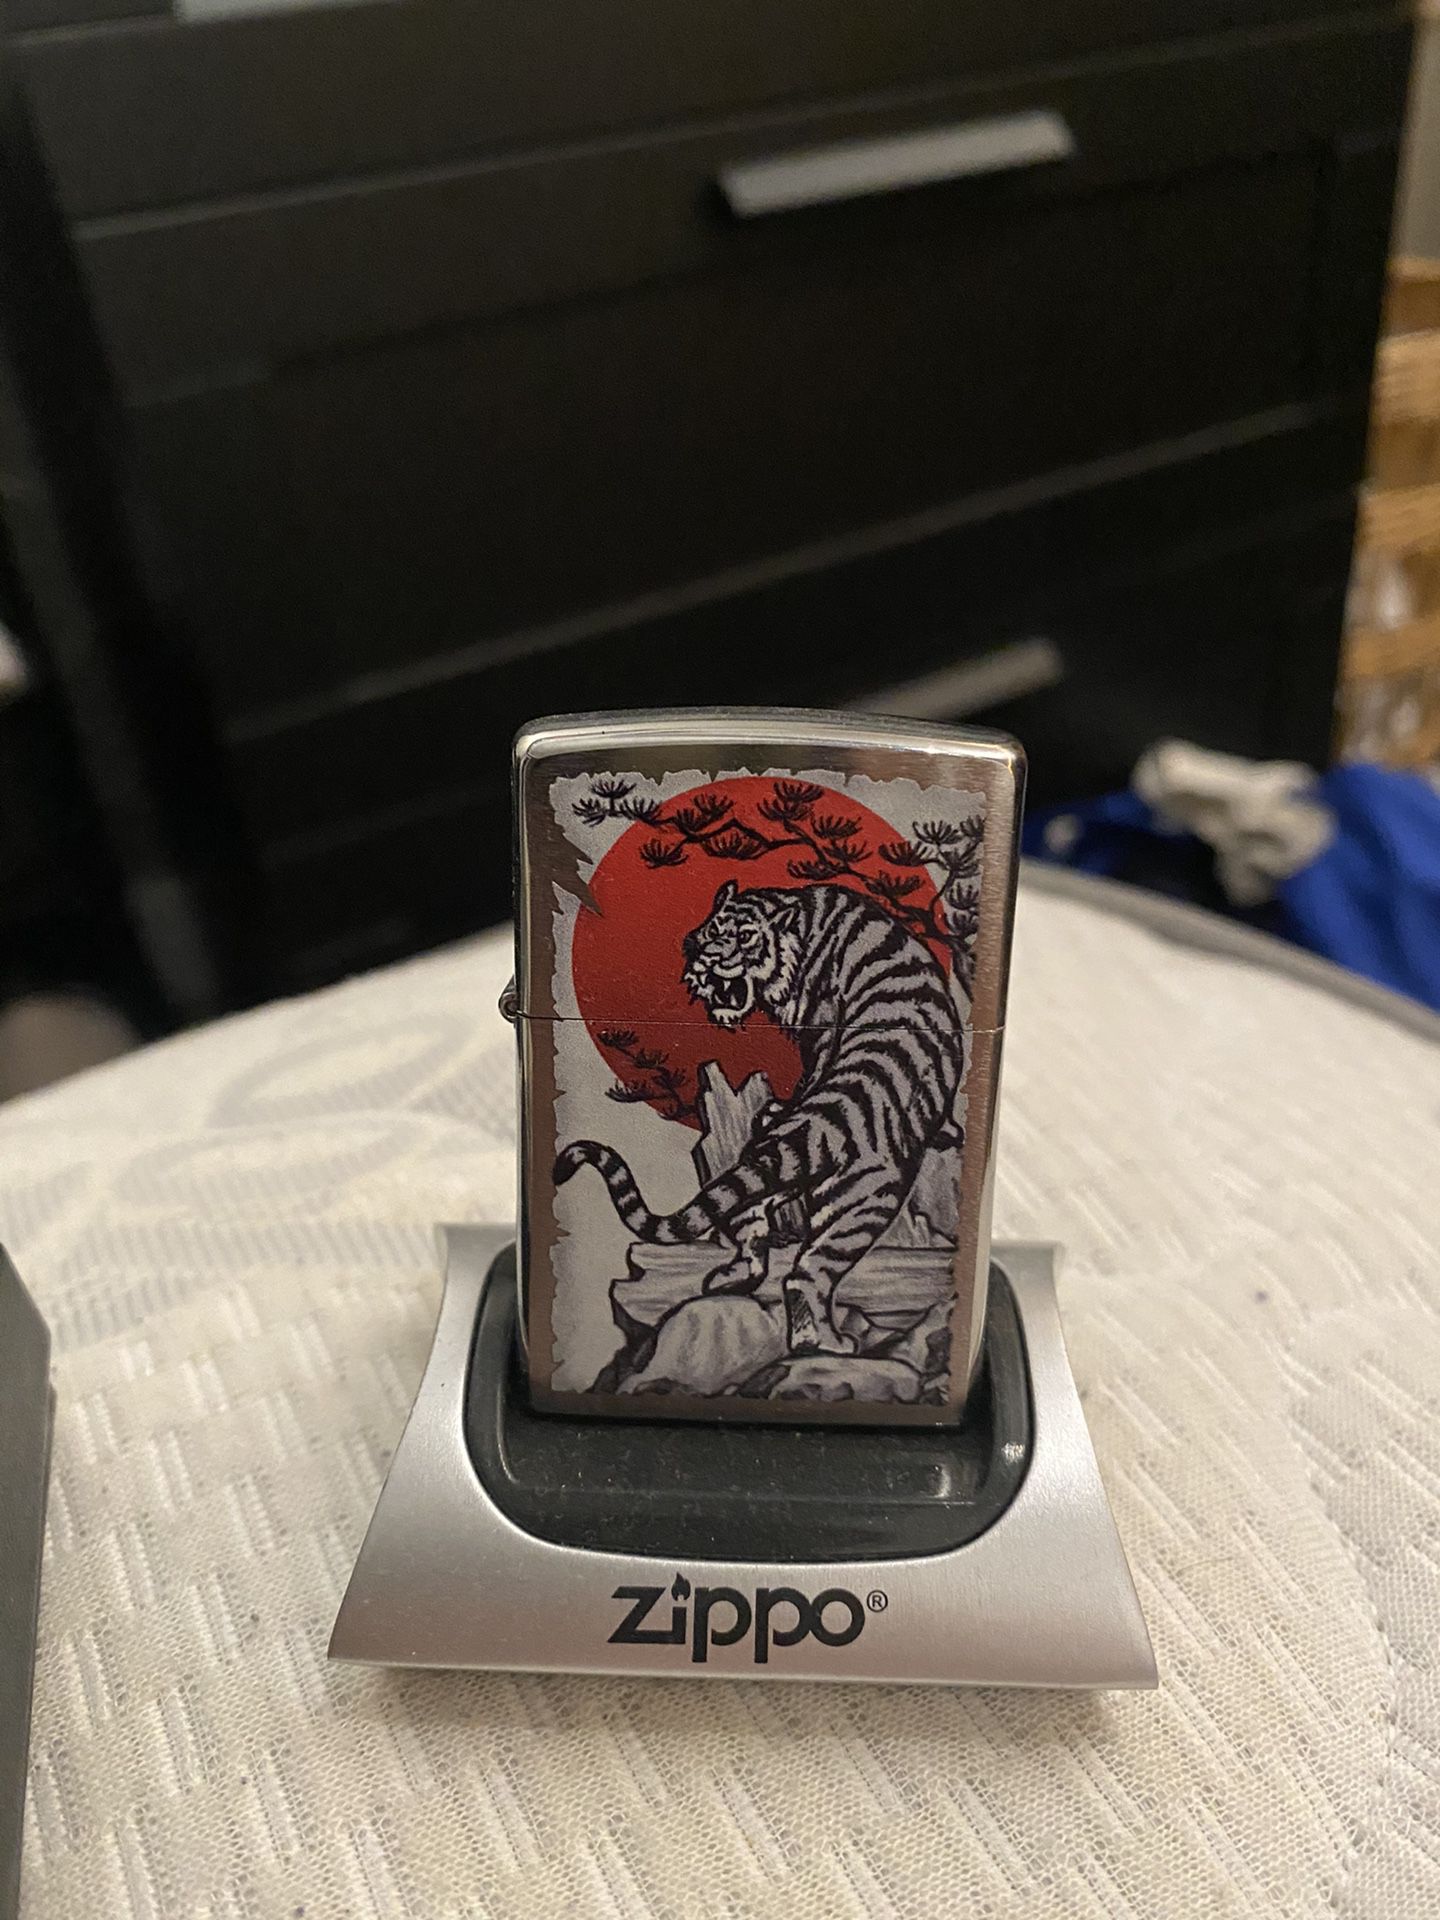 Zippo collectible lighter